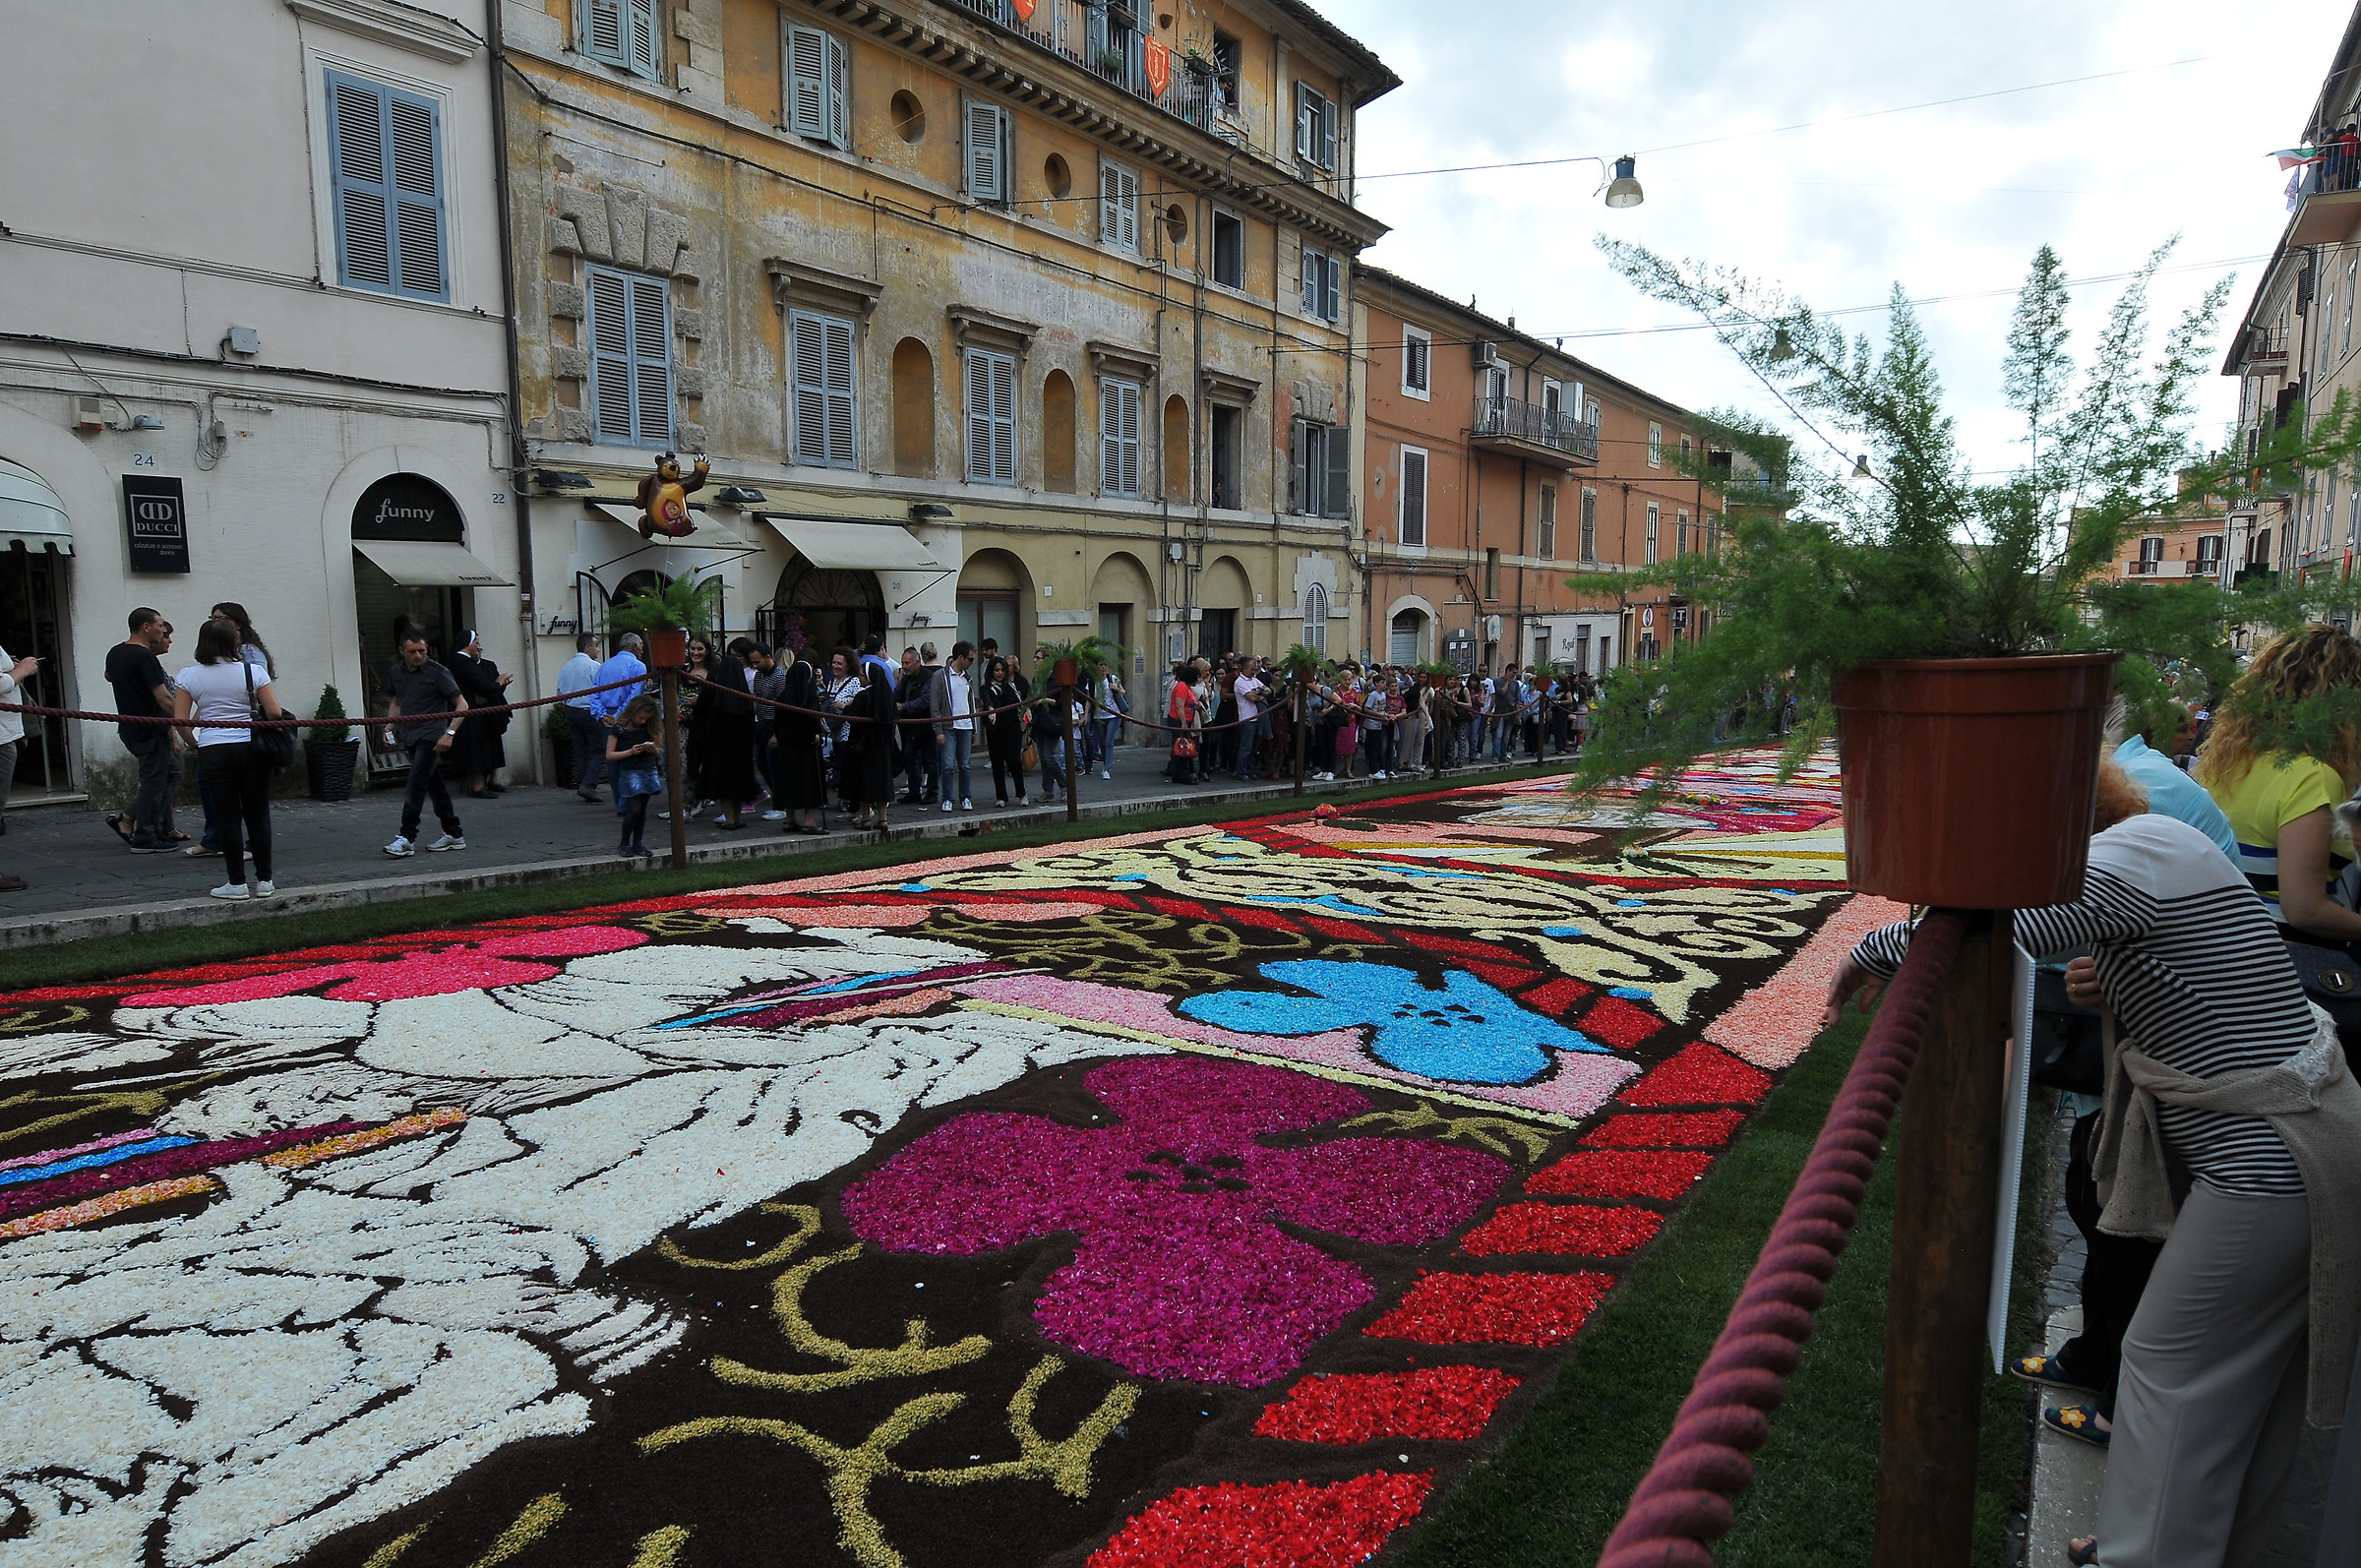 Flower Festival in Genzano...